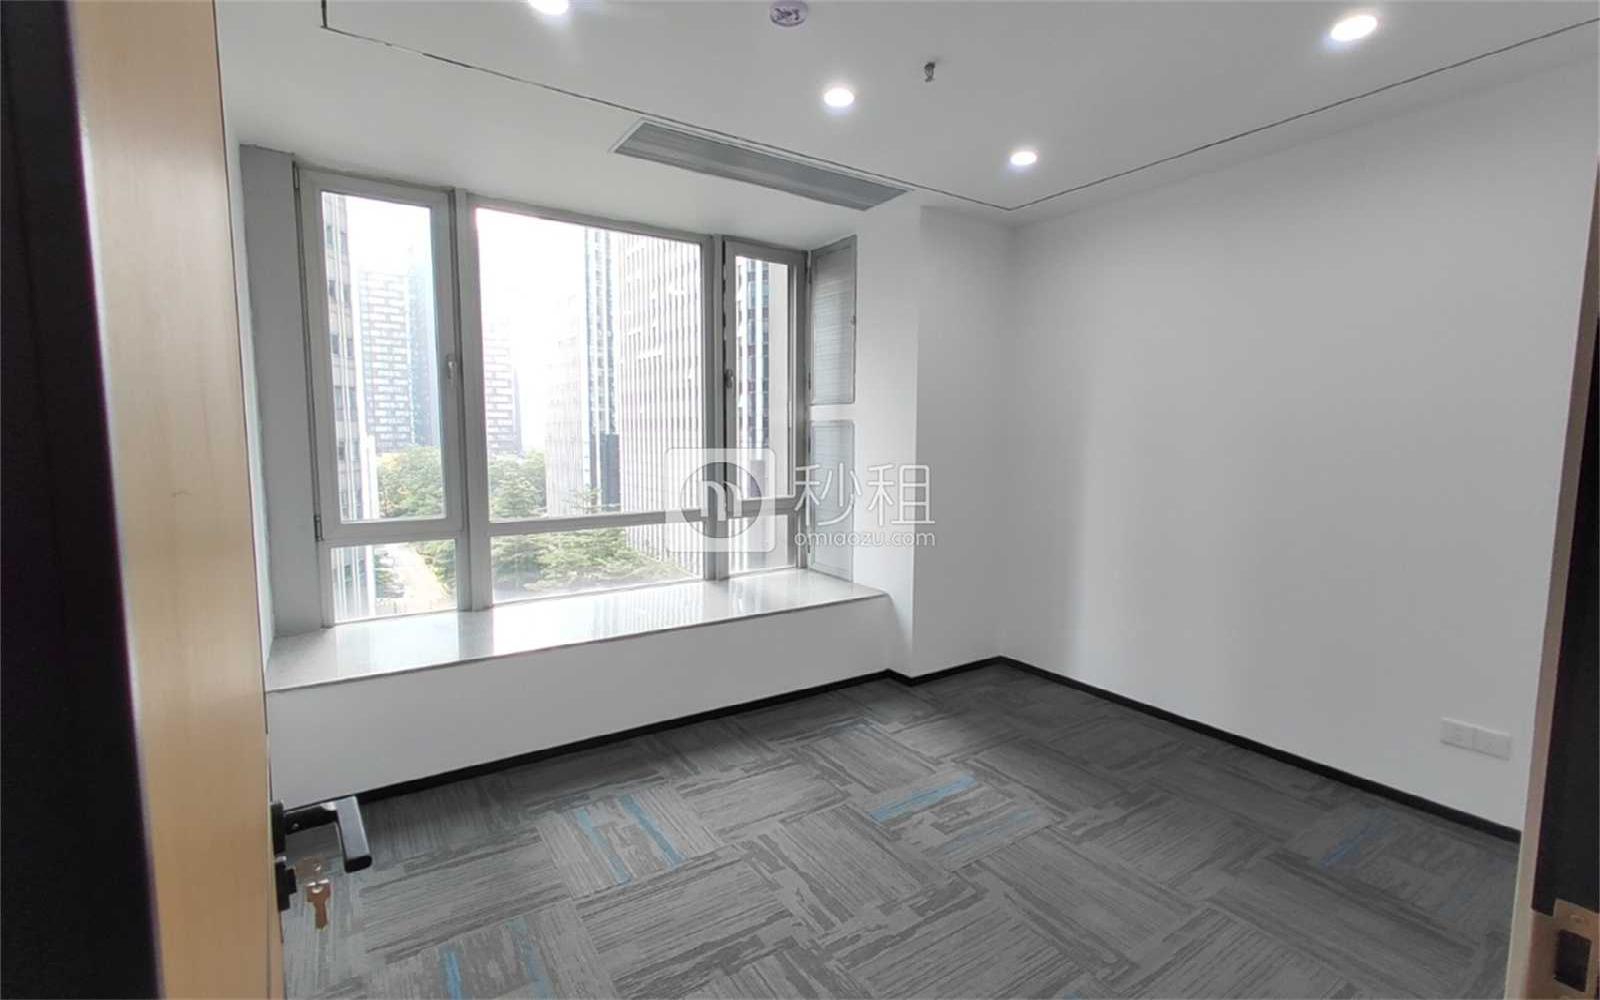 津滨腾越大厦写字楼出租170平米精装办公室90元/m².月